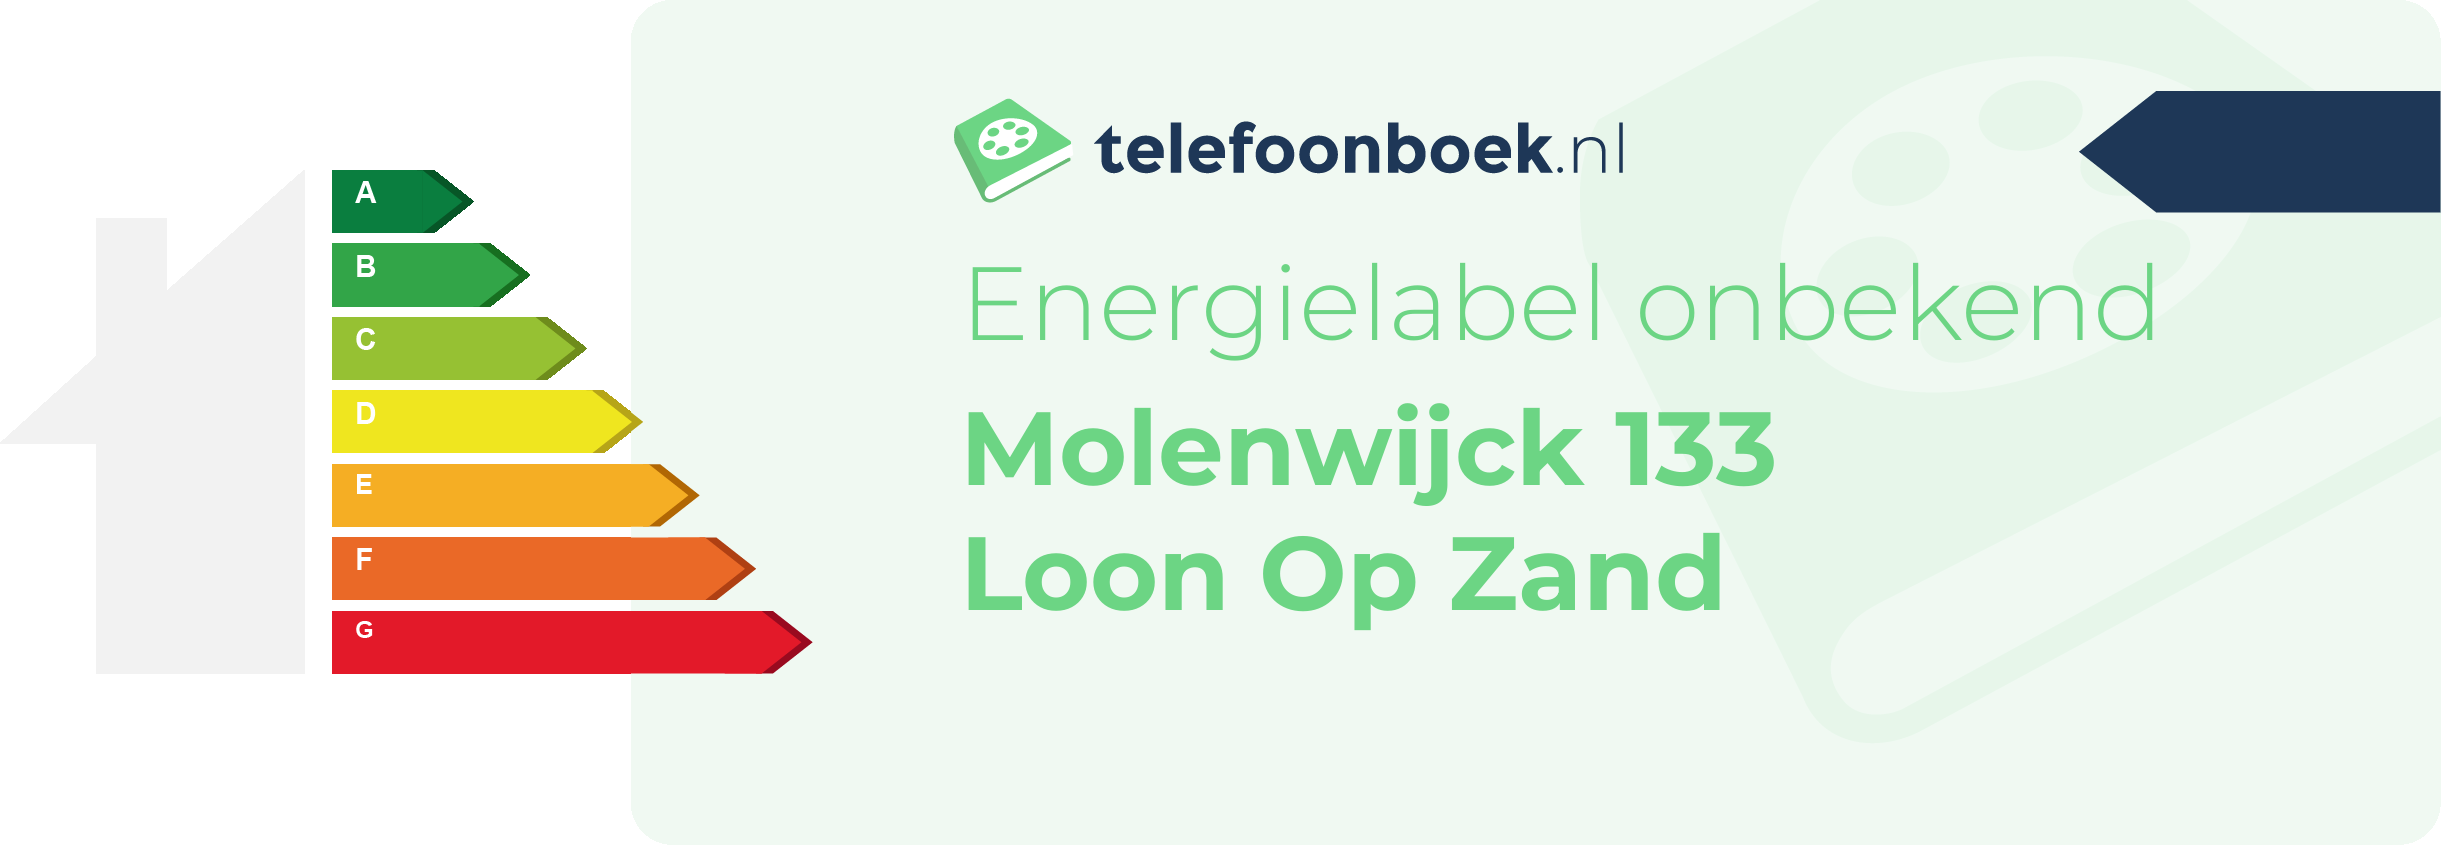 Energielabel Molenwijck 133 Loon Op Zand